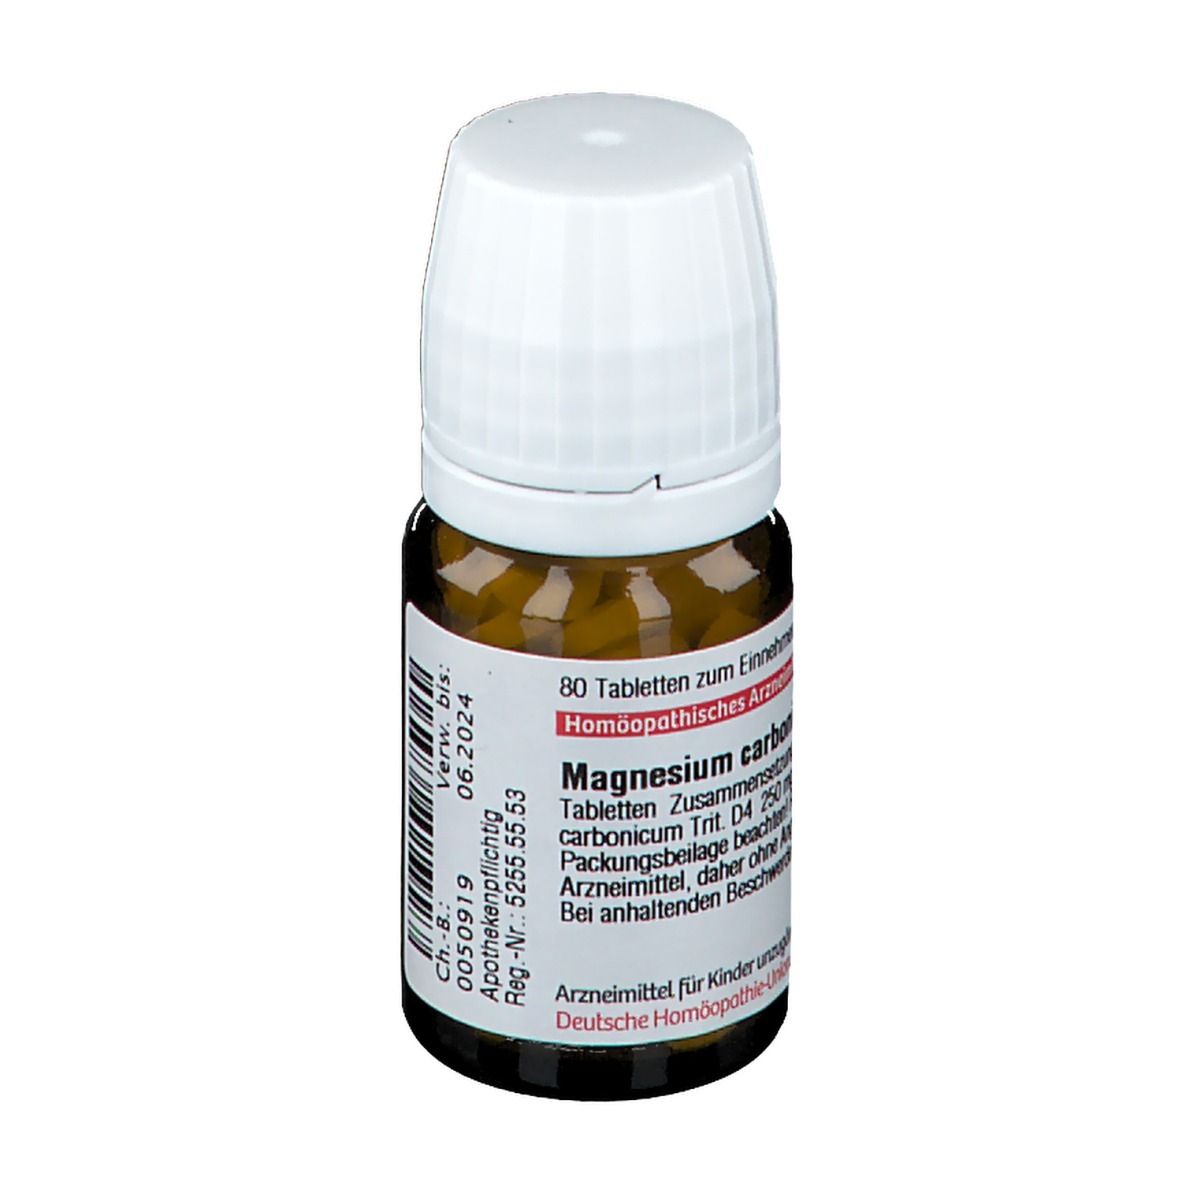 DHU Magnesium Carbonicum D4